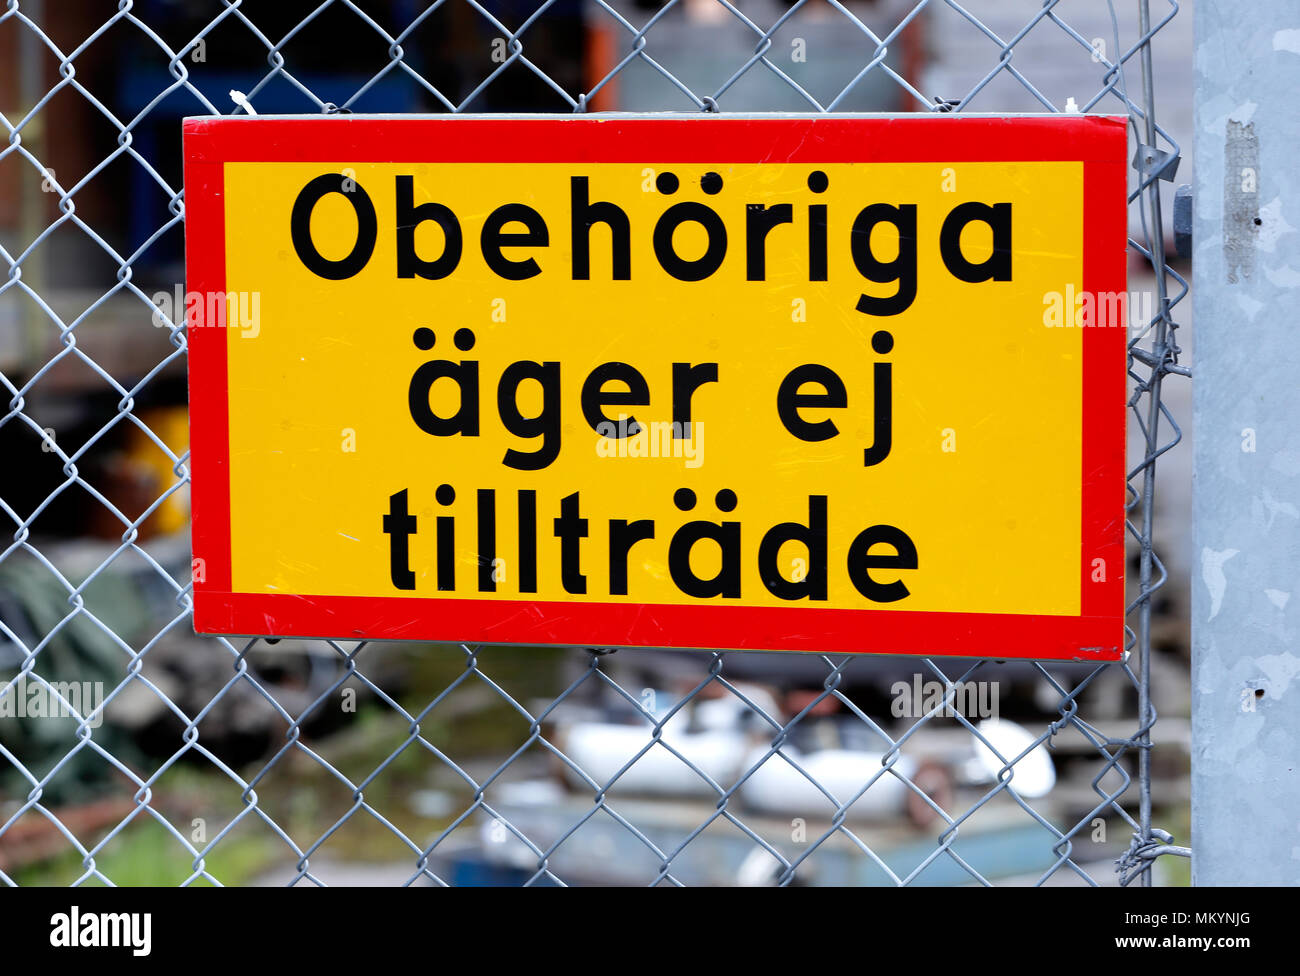 Close up de panneau jaune sur une clôture avec texte en suédois aucune admission pour Obehoriga non autorisée (ager ej) tilltrade Banque D'Images